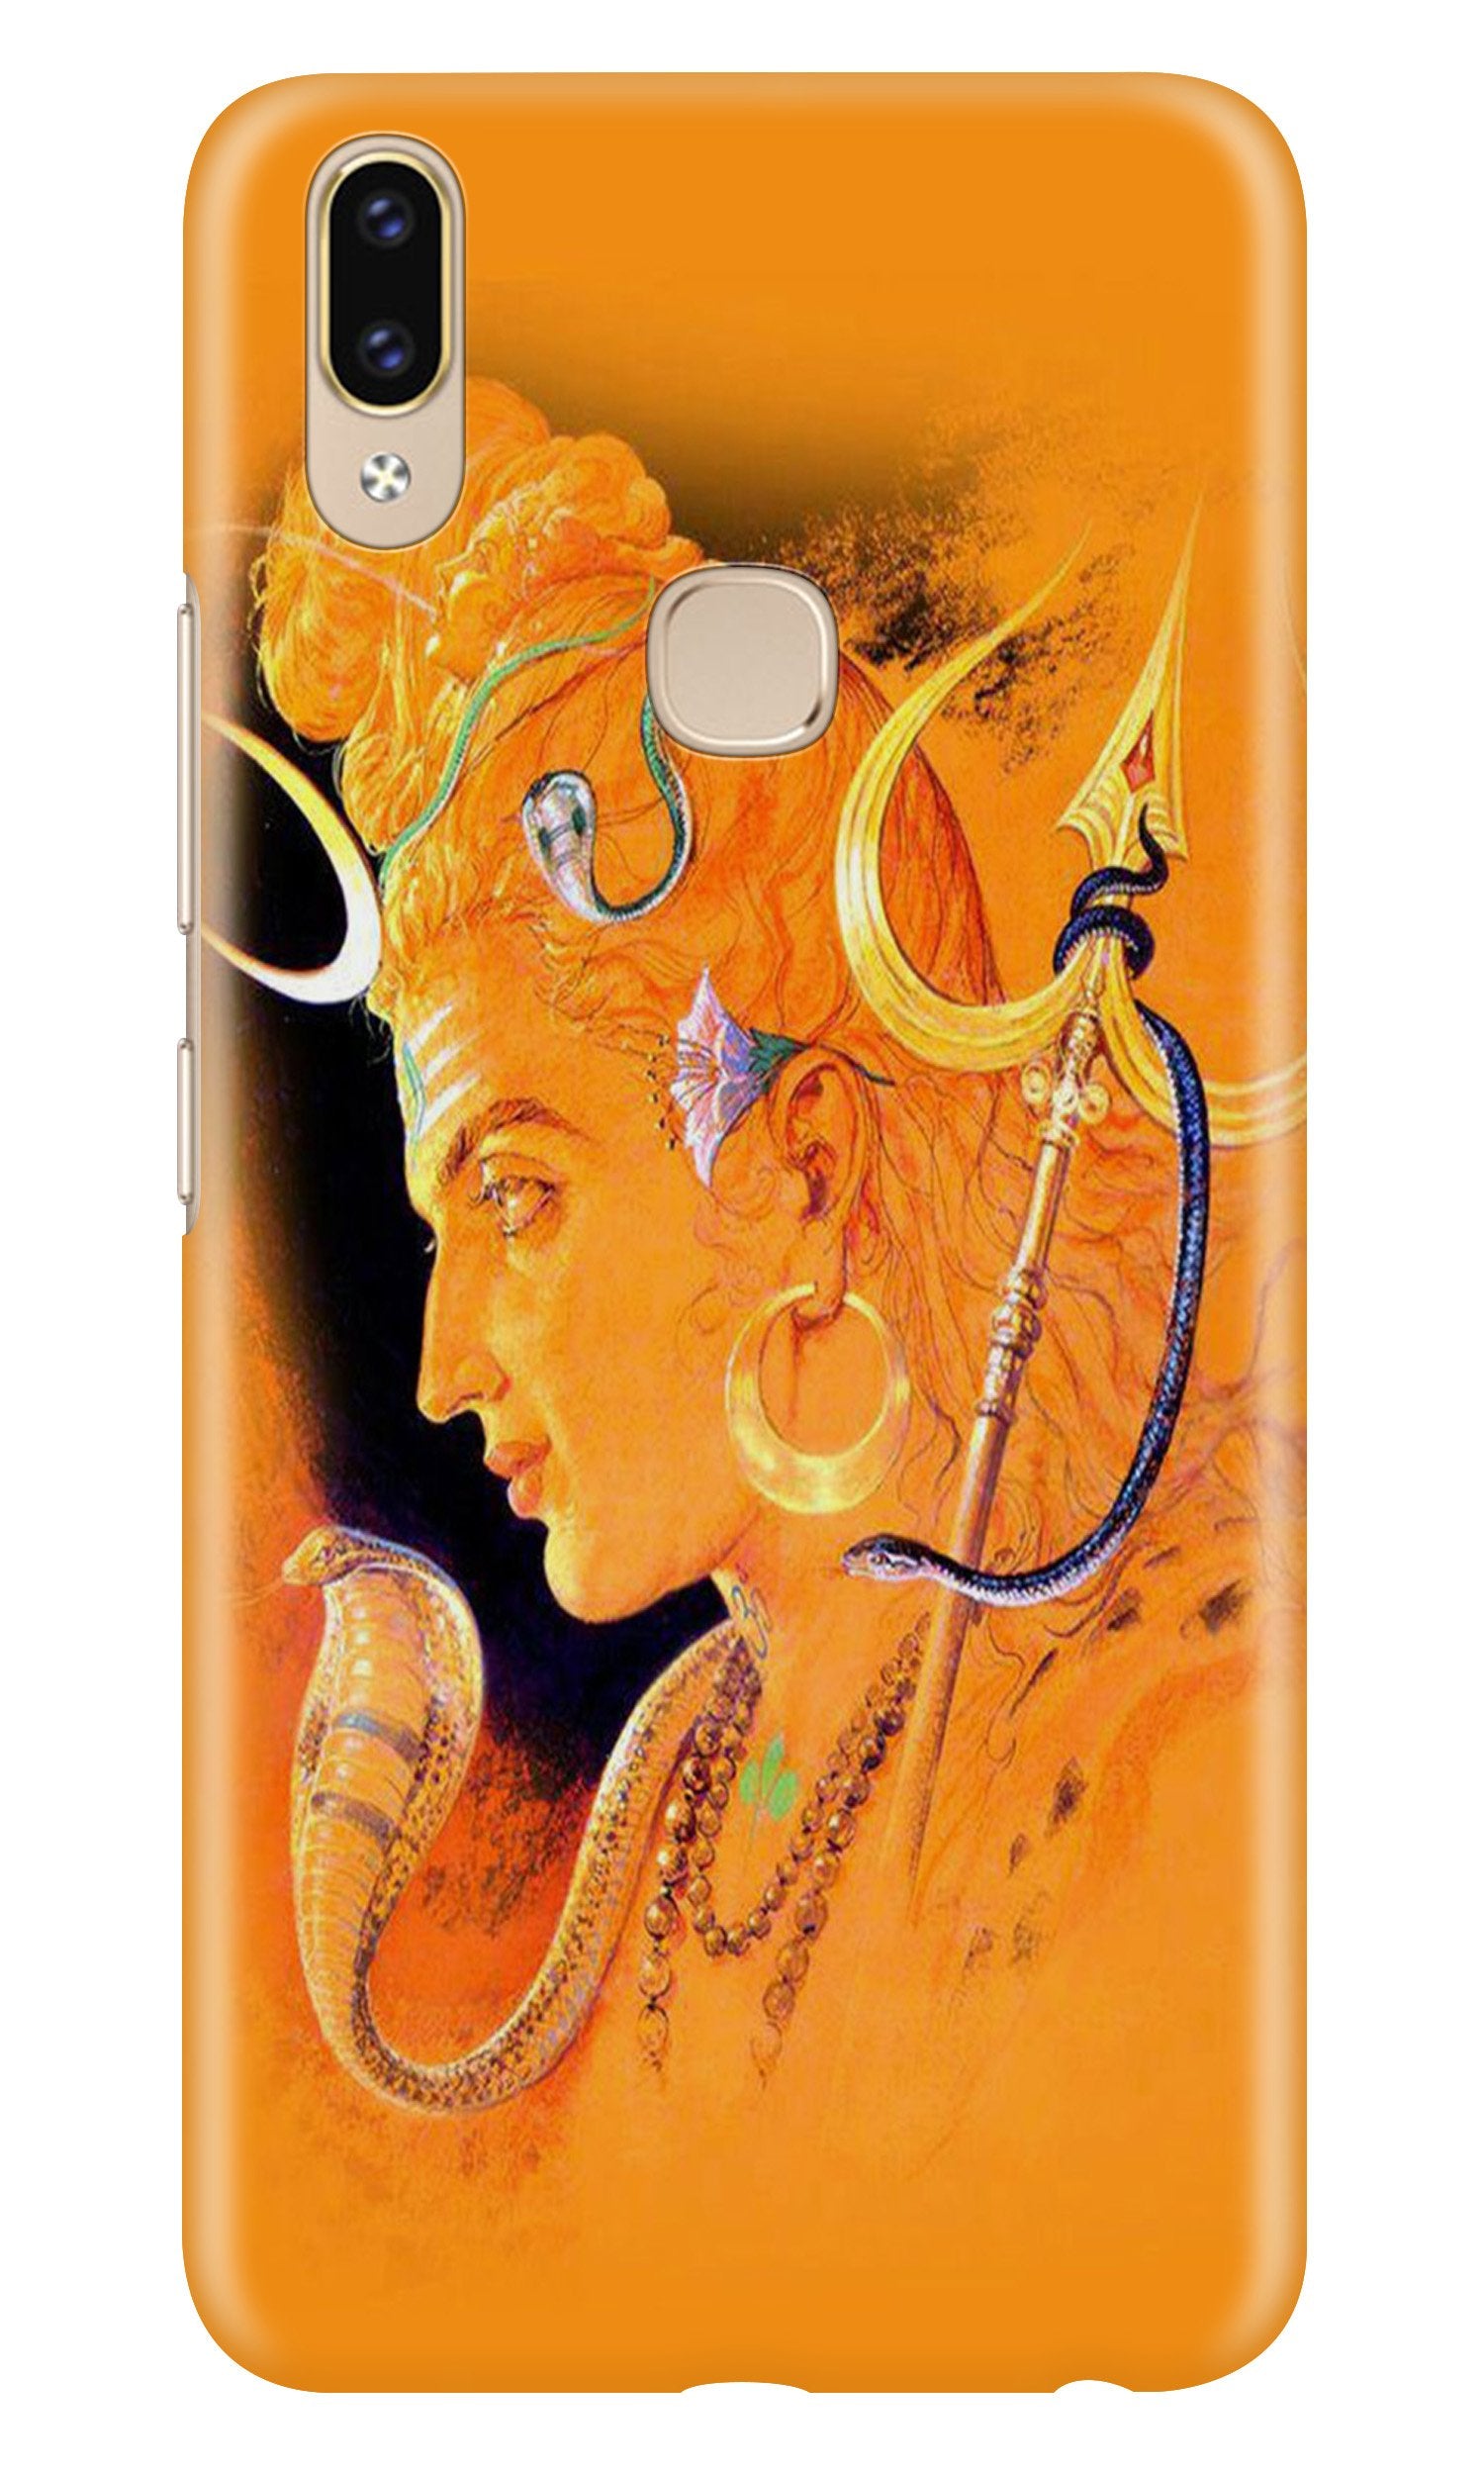 Lord Shiva Case for Asus Zenfone Max Pro M2 (Design No. 293)